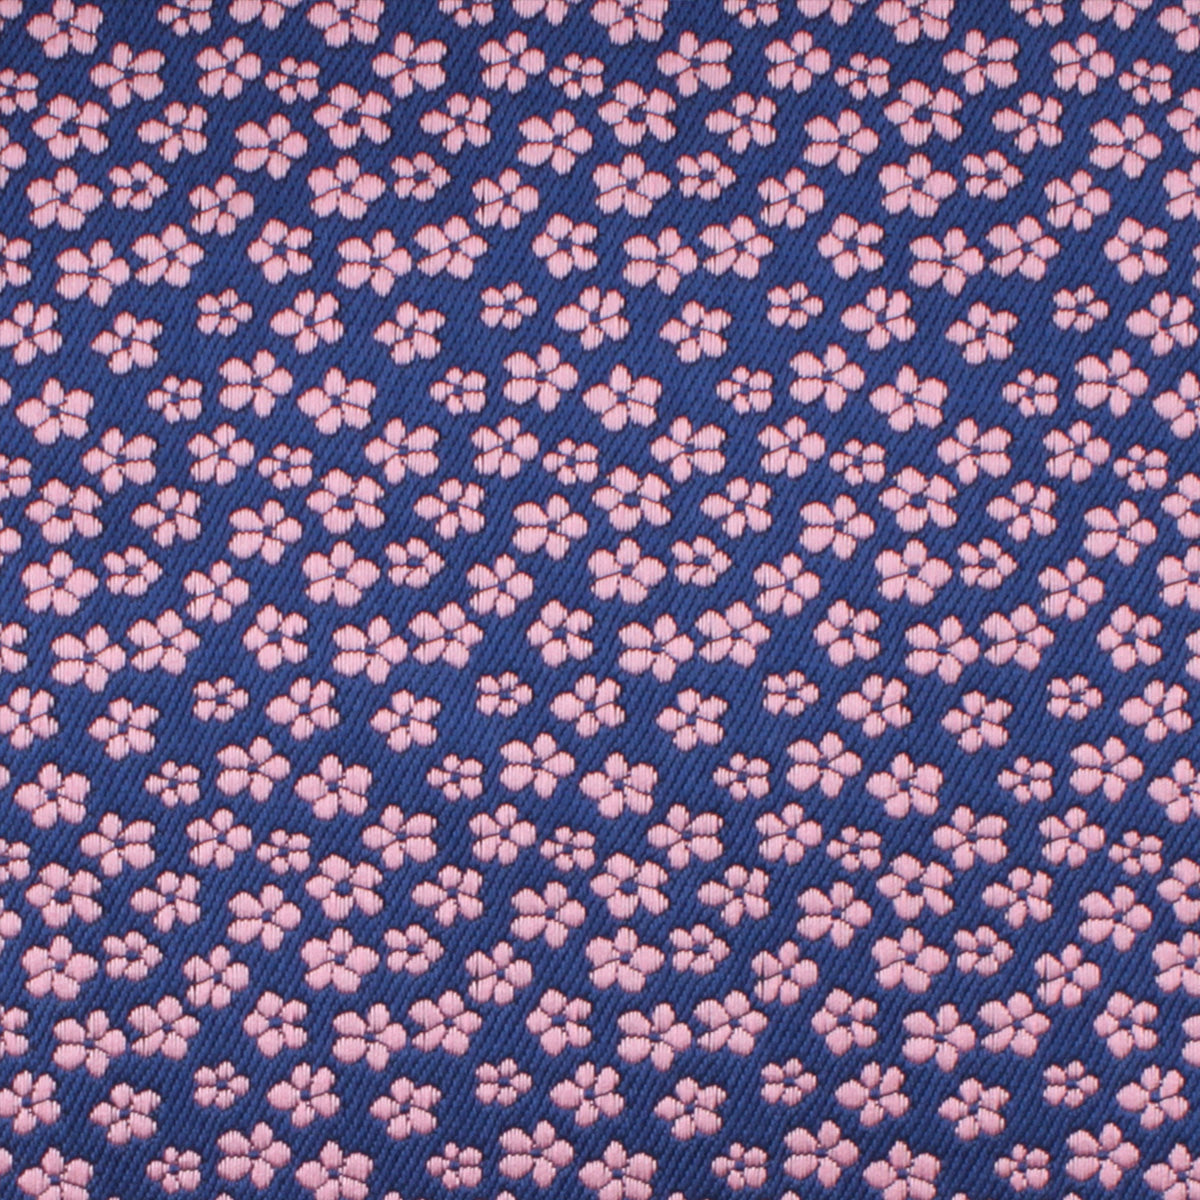 Pink Plum Blossom Floral Pocket Squares